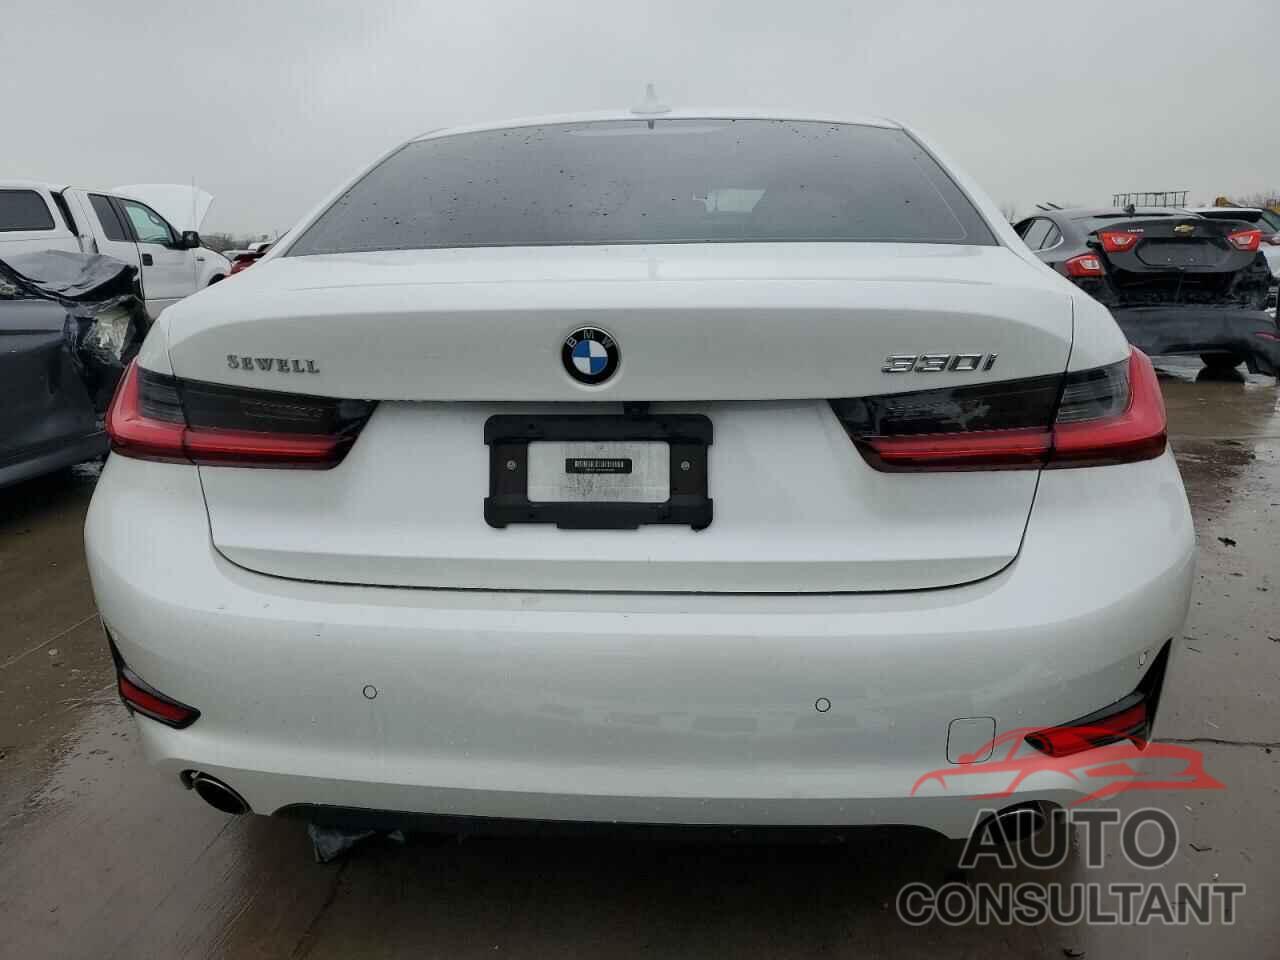 BMW 3 SERIES 2021 - 3MW5R1J0XM8B92293